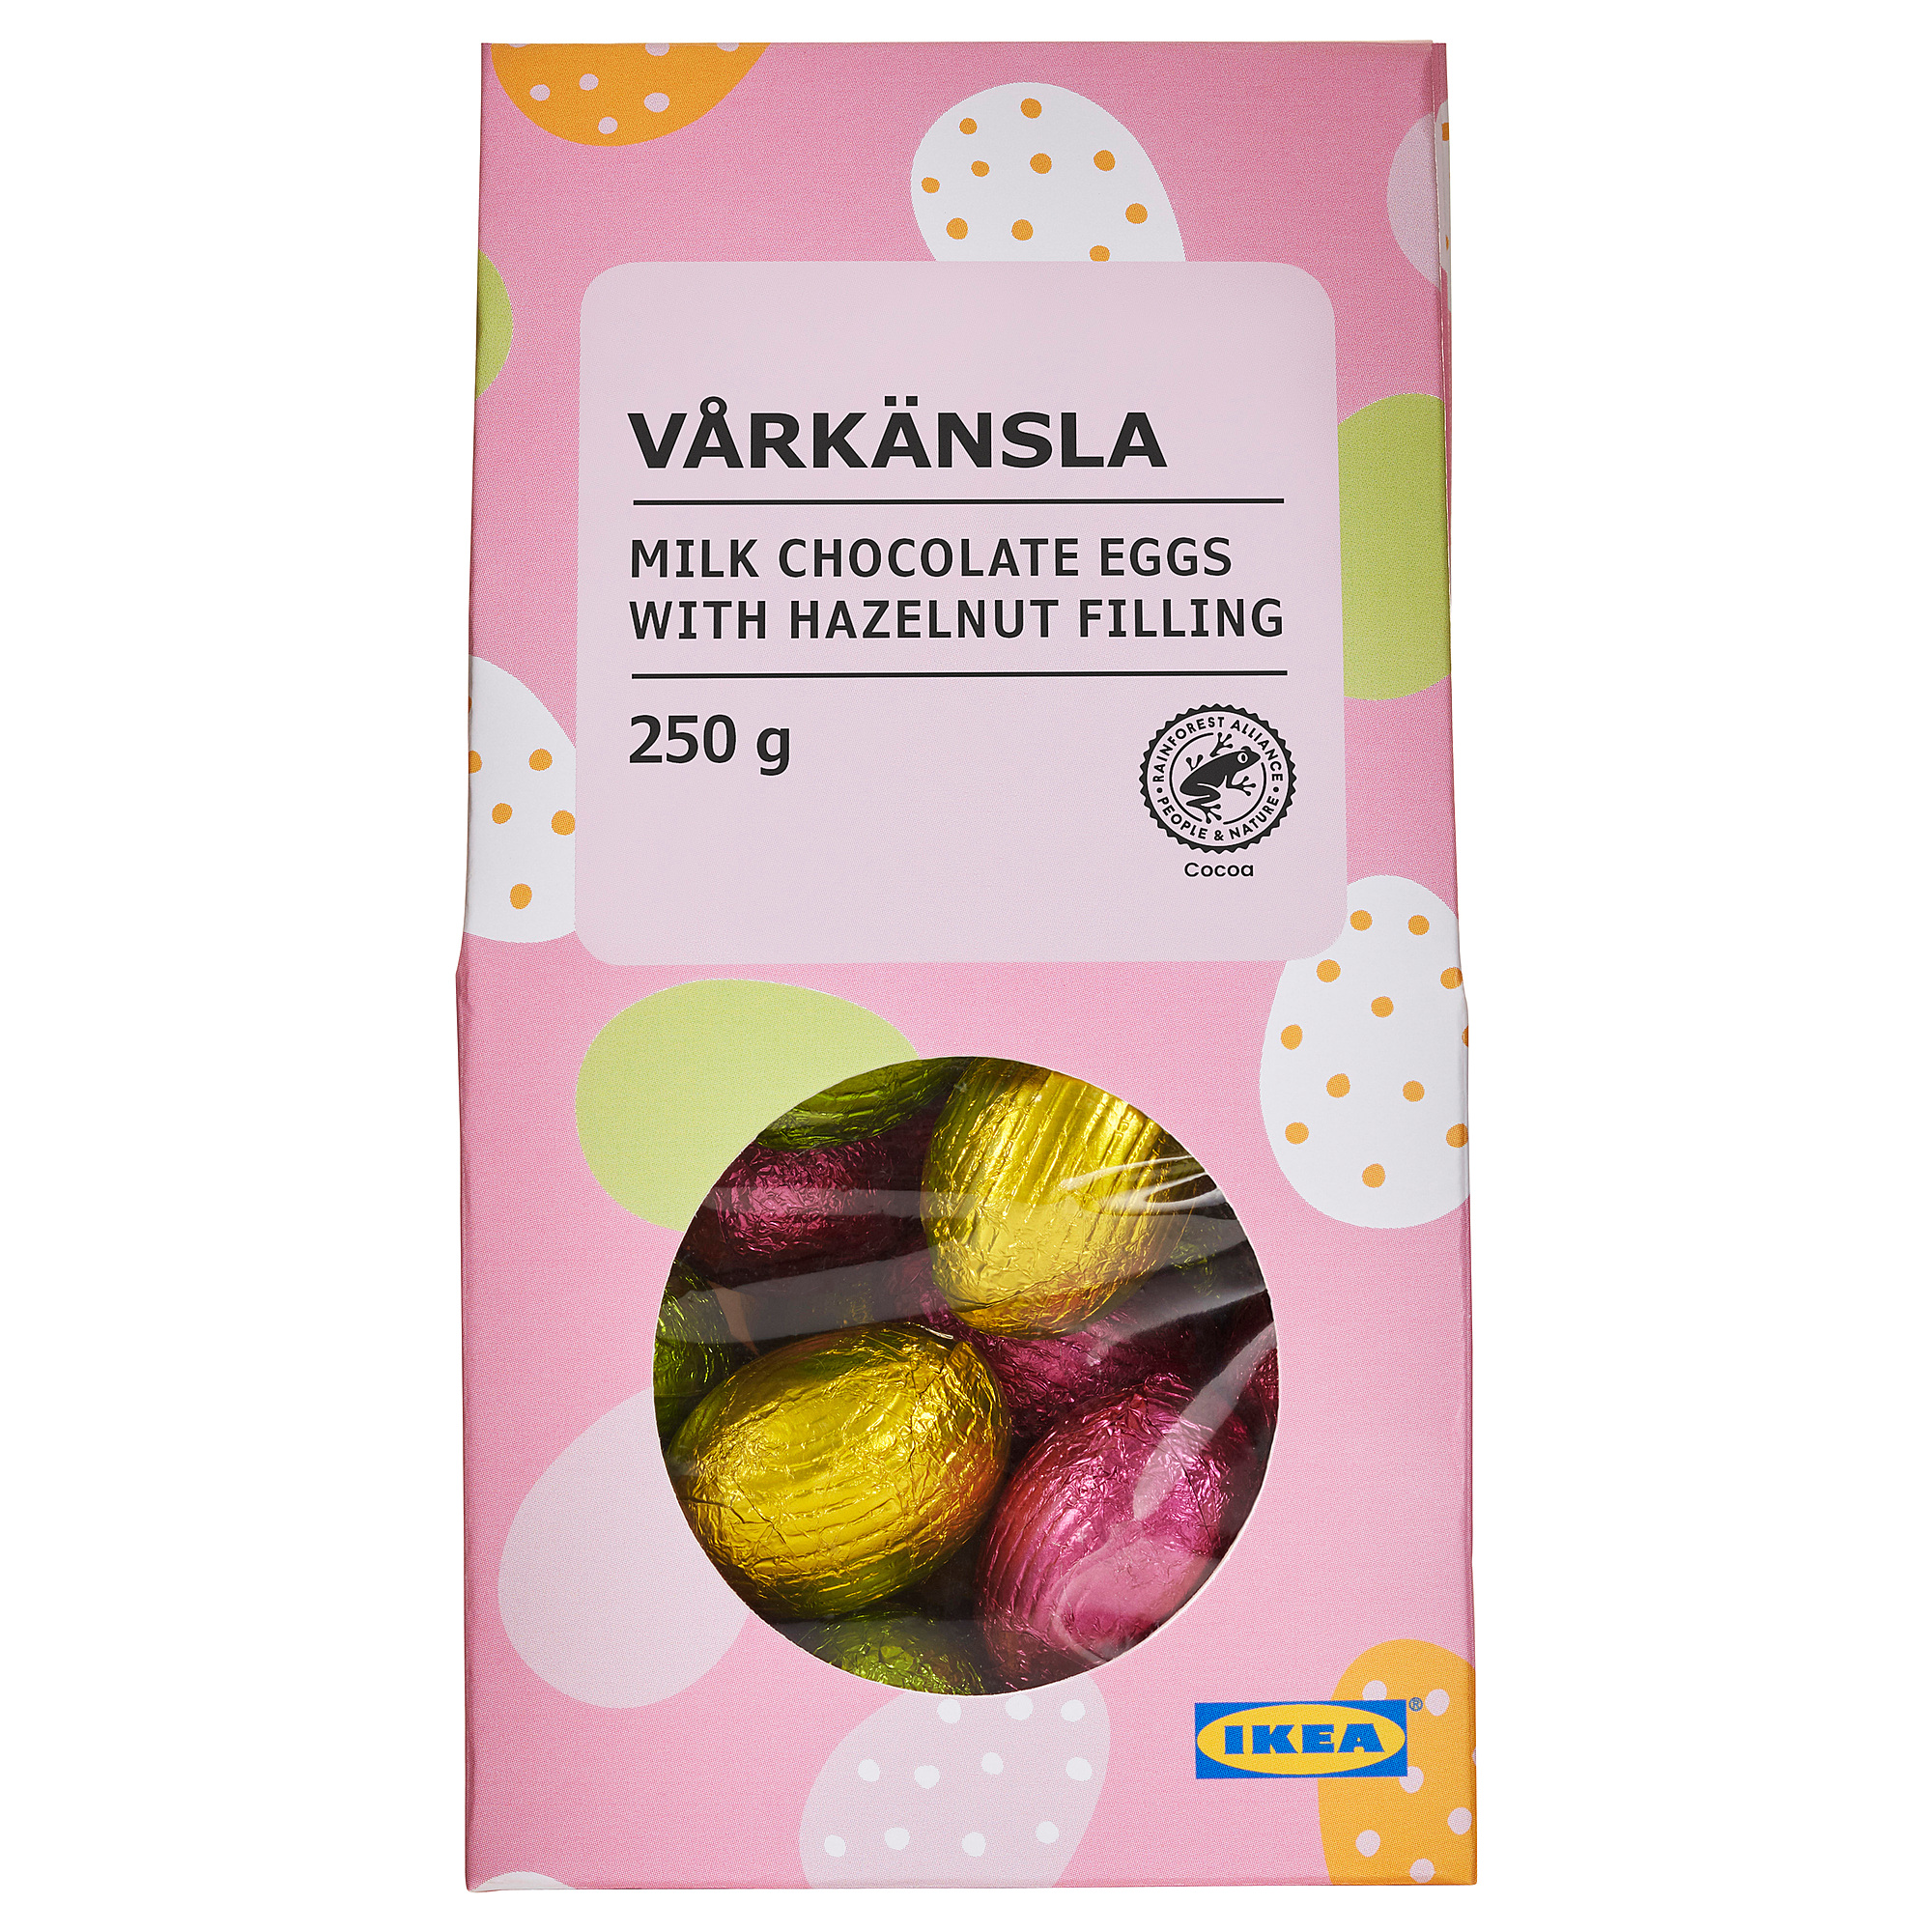 VÅRKÄNSLA milk chocolate eggs